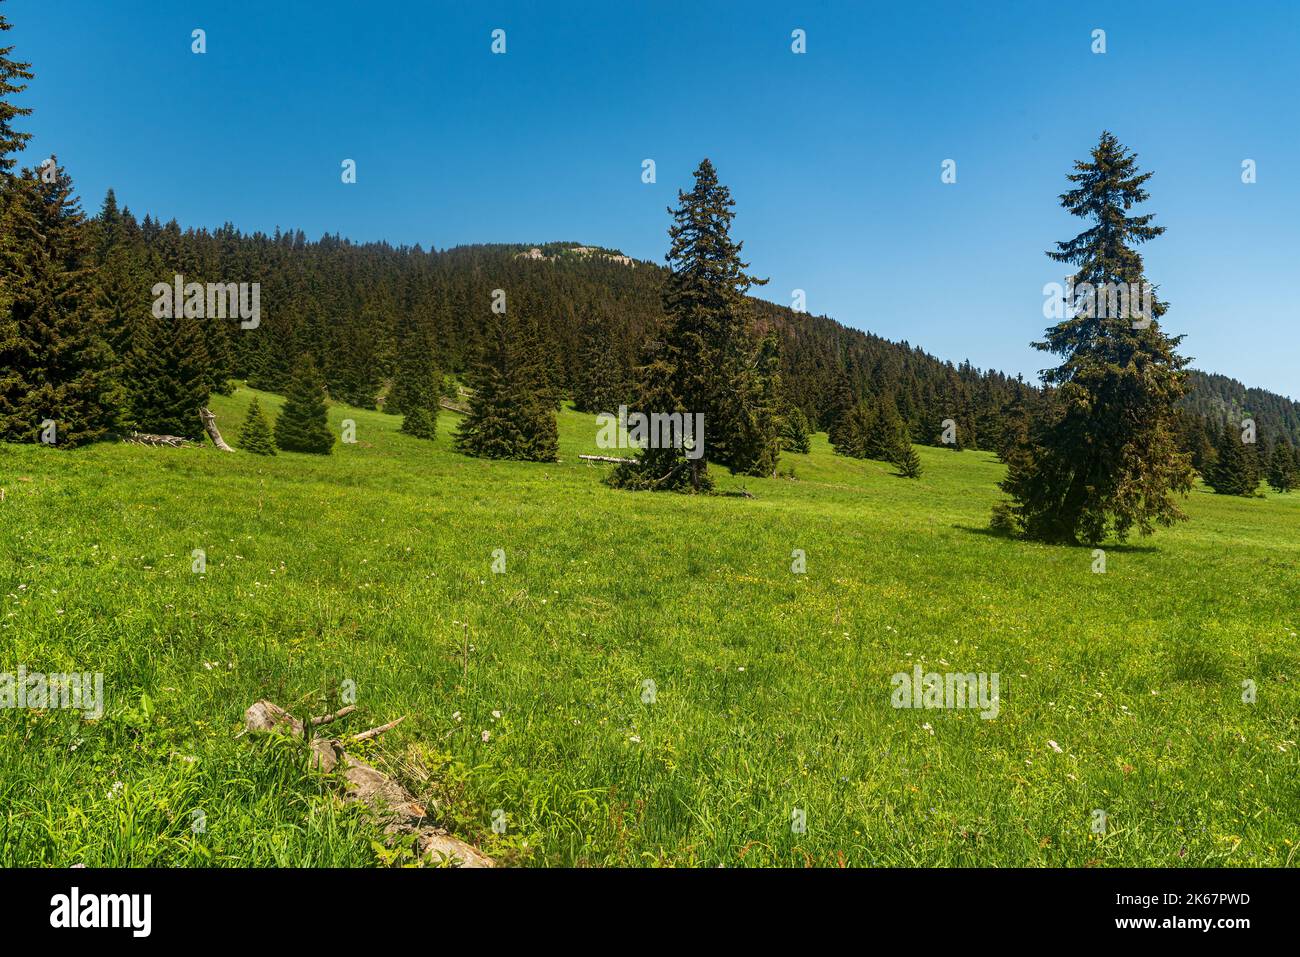 Stredna polana Wiese mit Velky Choc Hügel oben in Chocske vrchy Berge in der Slowakei während schönen Frühlingstag Stockfoto